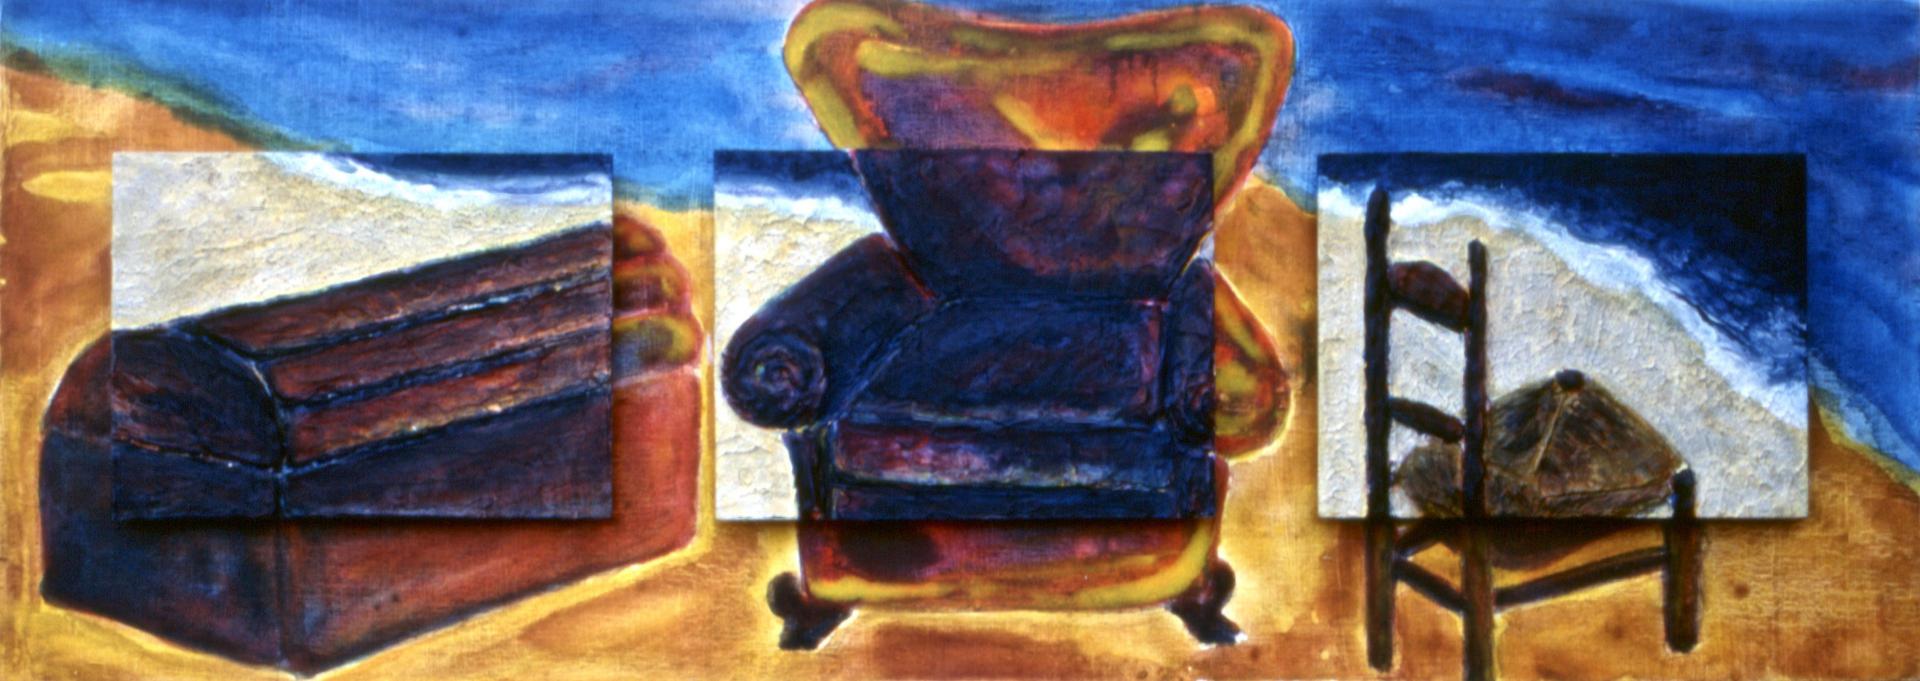 Reencuentro / Rencontre - sur bois, 25 x 75 cm, 1998